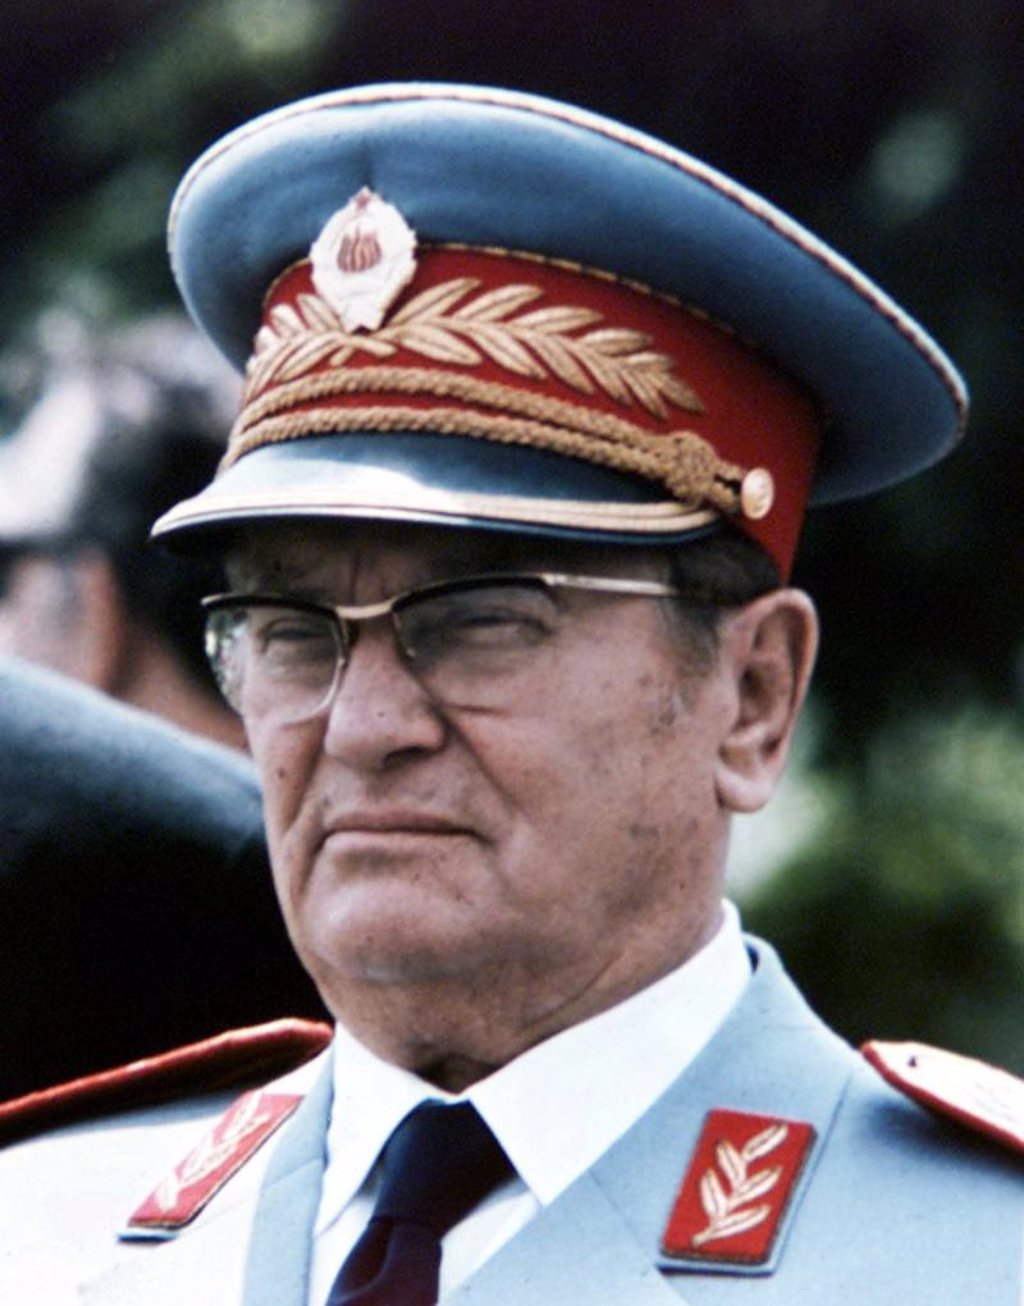 Hoy Se Cumplen 30 Años De La Muerte De Tito El Padre De La Yugoslavia